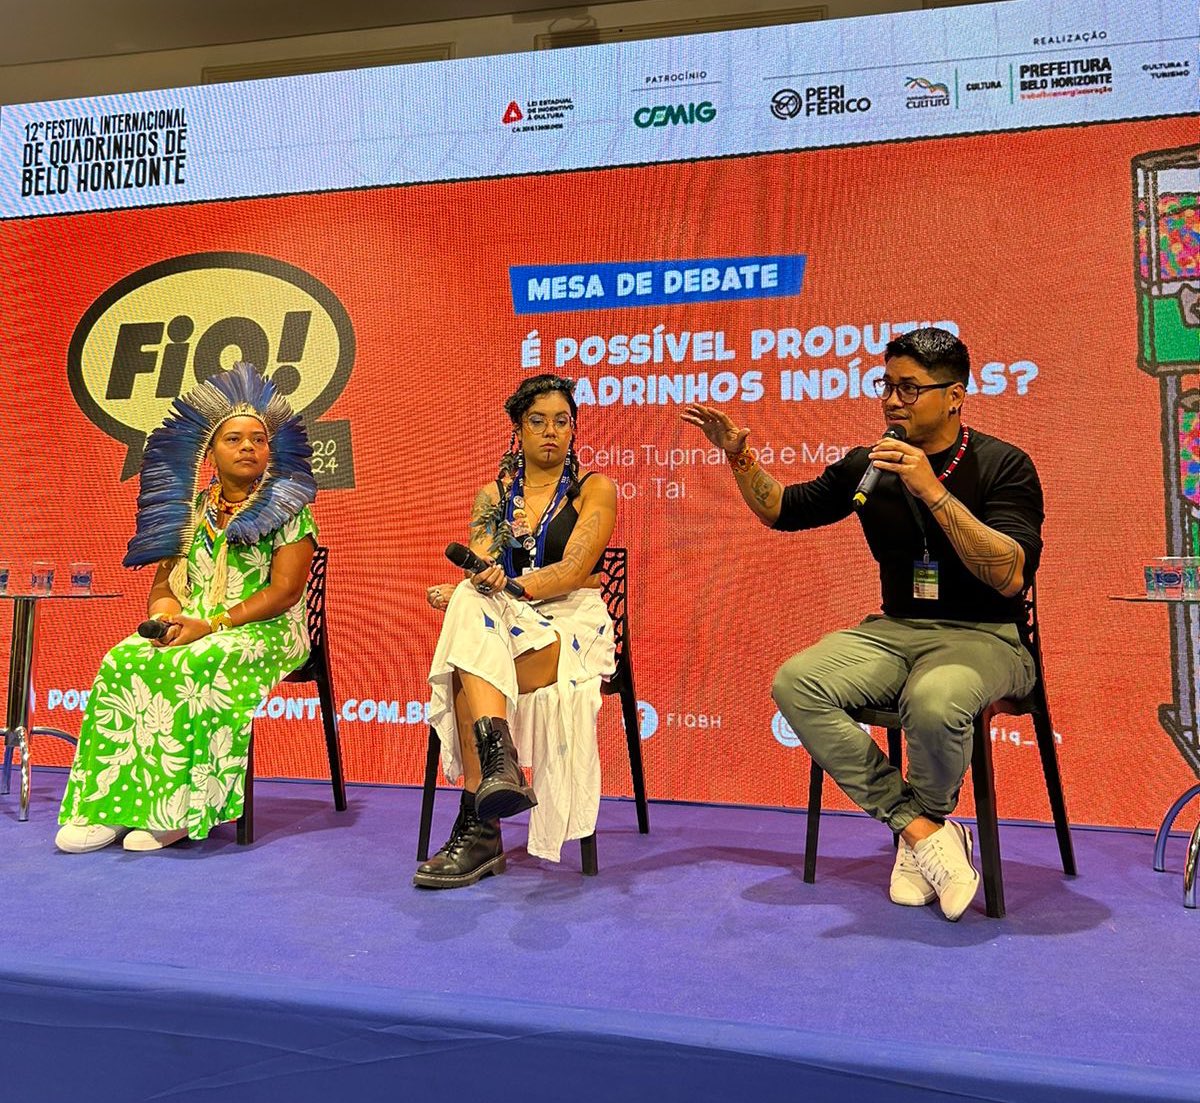 Rolando agora no @fiq_bh a mesa de debate “É possível produzir quadrinhos indígenas?” Participação dos paraenses @ixe_tai e Marcelo Borary e Celia Tupinambá, da Bahia. 🏹